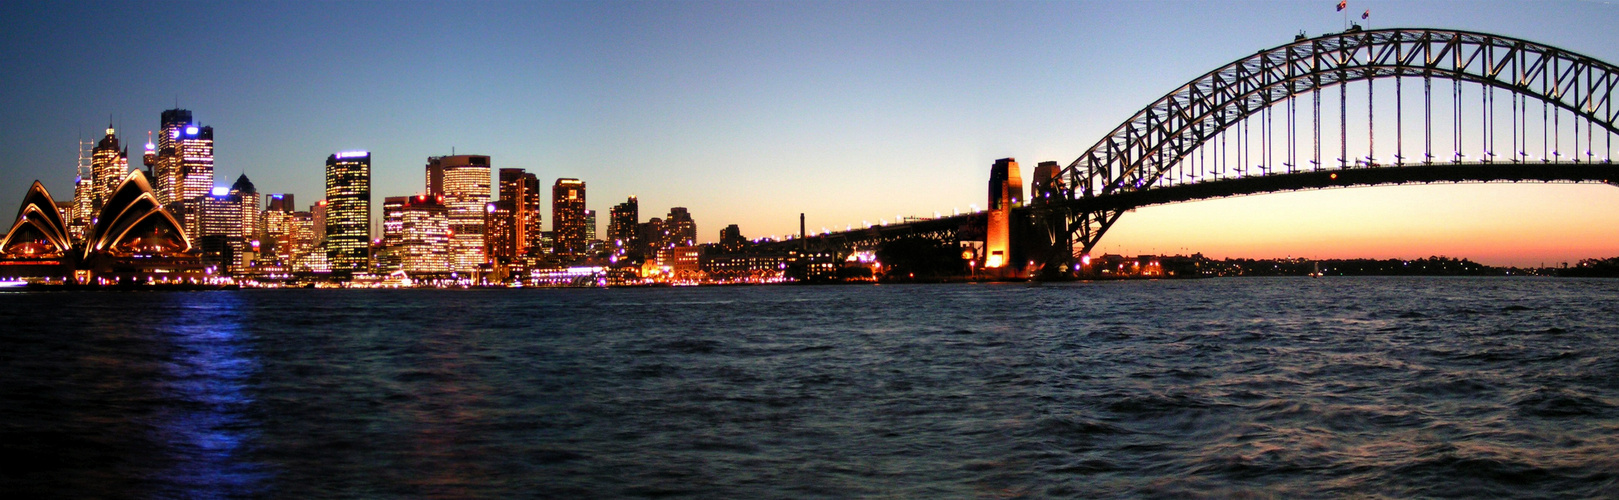 From Sydney Opera to Harbour Bridge